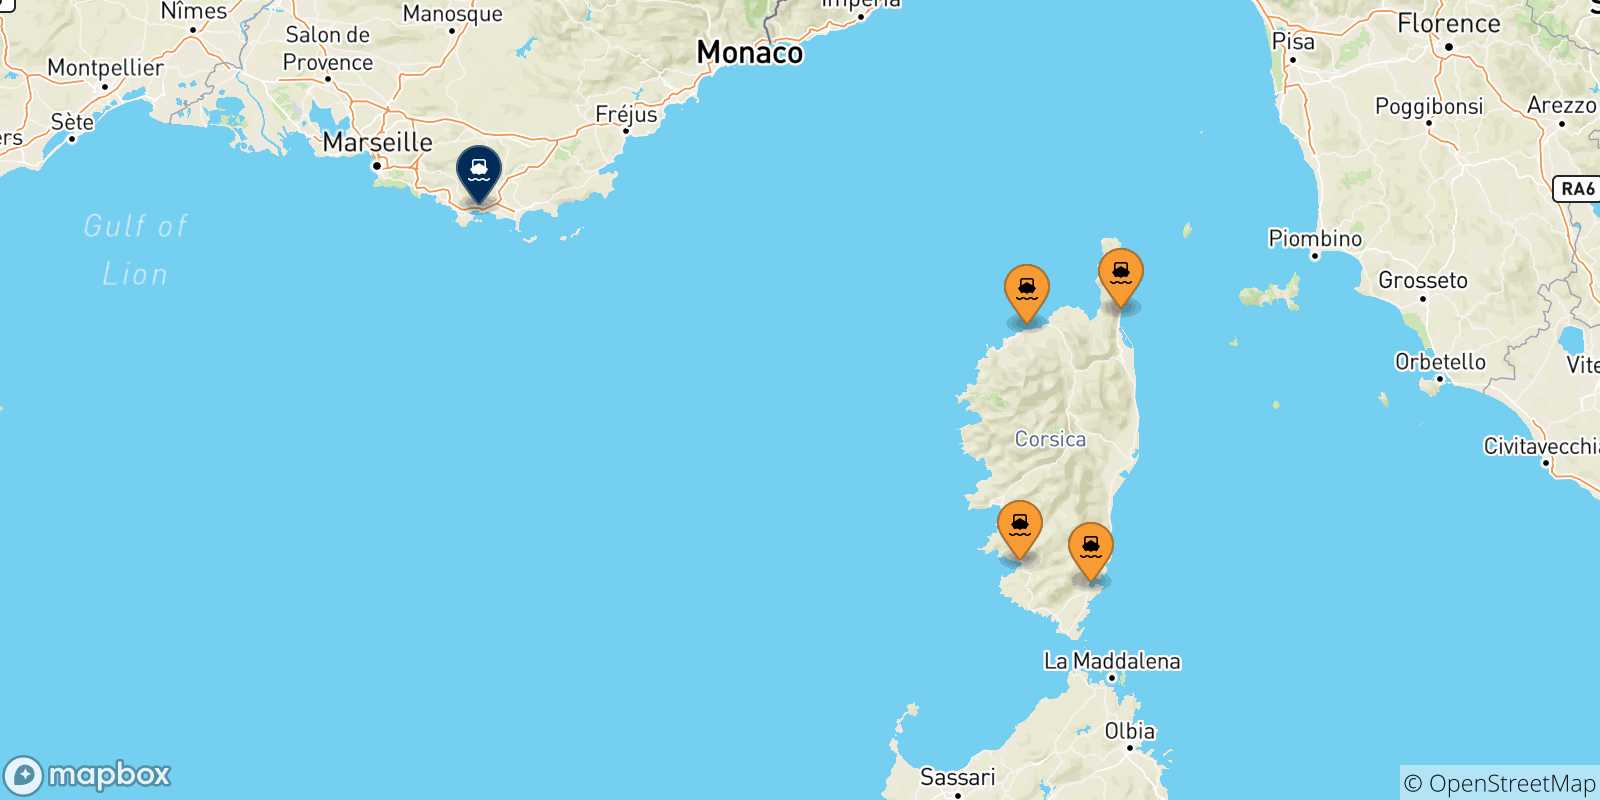 Mappa delle possibili rotte tra la Corsica e Tolone